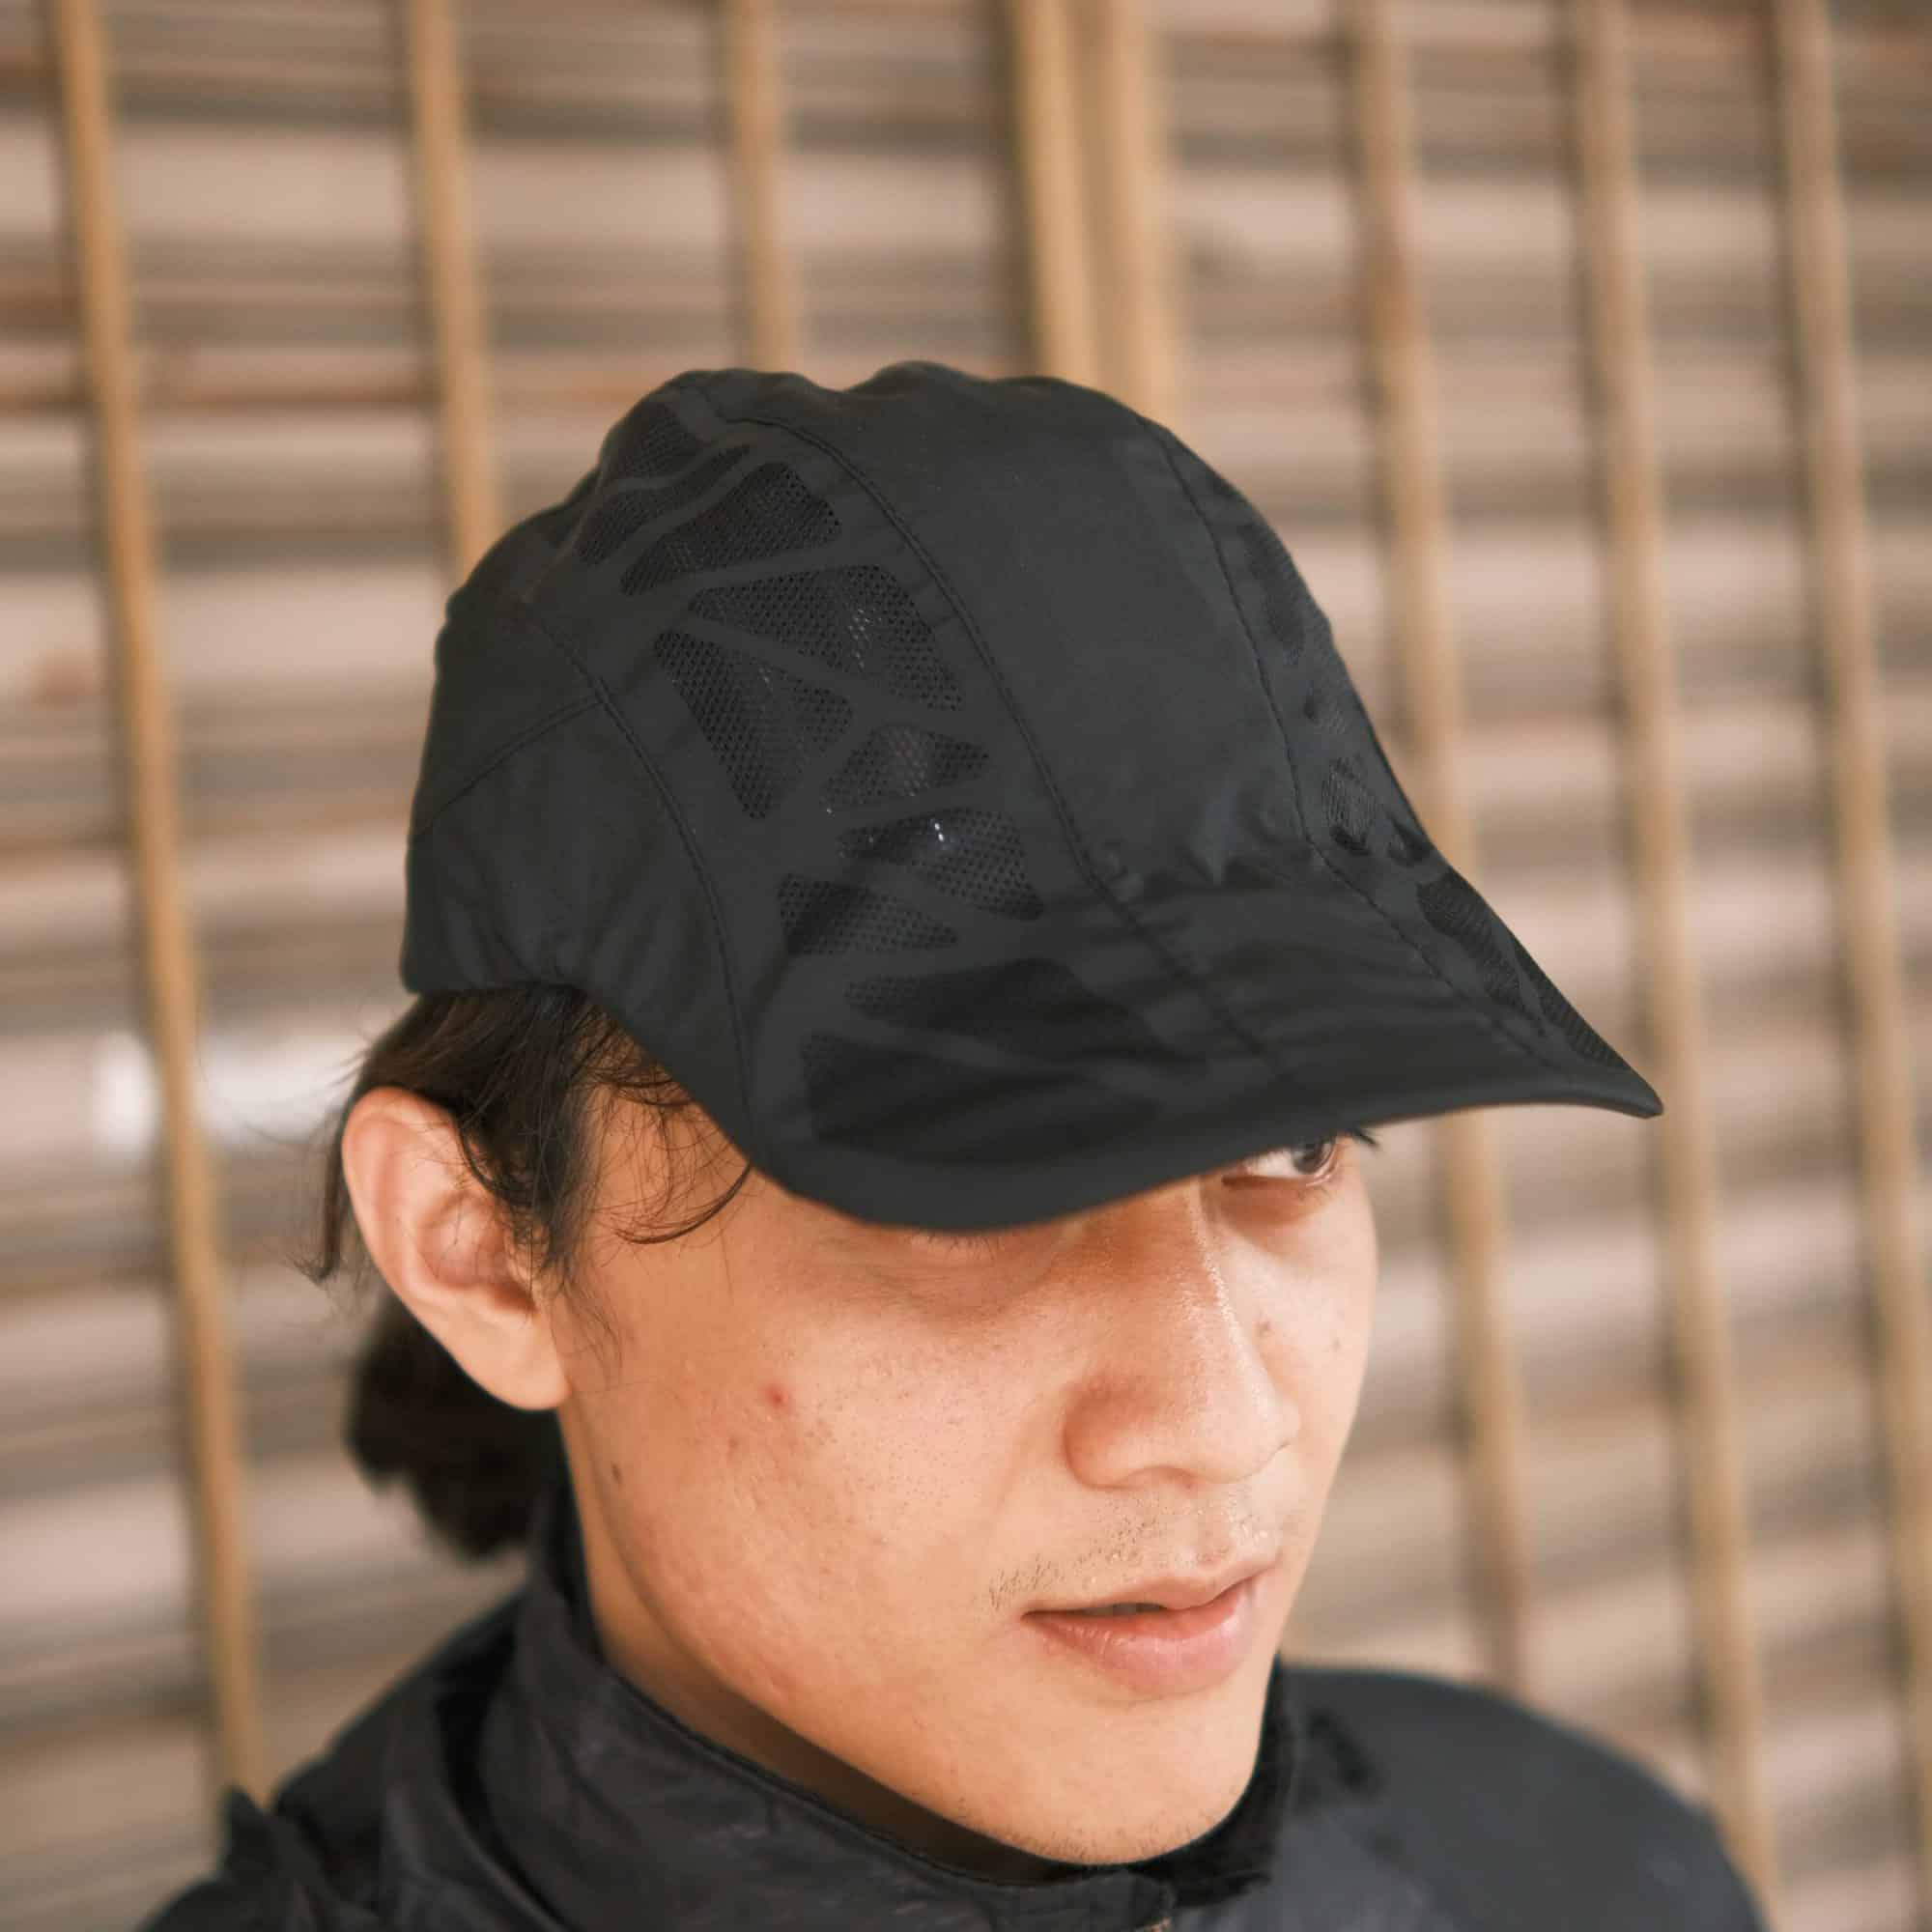 Tahan Outdoor Cap, affordable, premium, indoor, quick dry, adjustable, cap, cycling cap, black cap, baseball cap